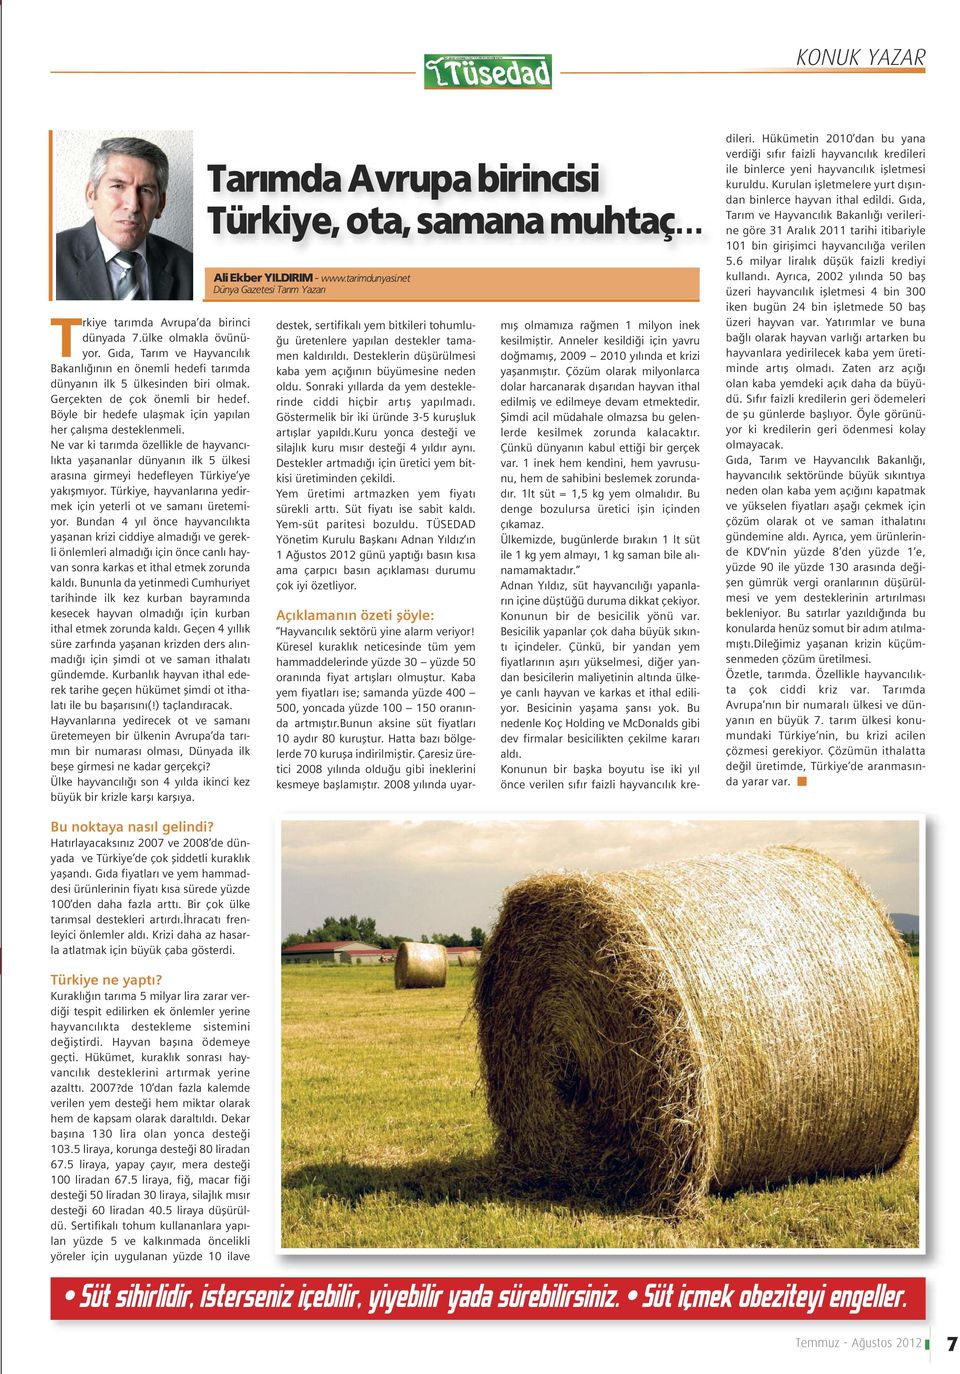 Ne var ki tarımda özellikle de hayvancılıkta yaşananlar dünyanın ilk 5 ülkesi arasına girmeyi hedefleyen Türkiye ye yakışmıyor. Türkiye, hayvanlarına yedirmek için yeterli ot ve samanı üretemiyor.